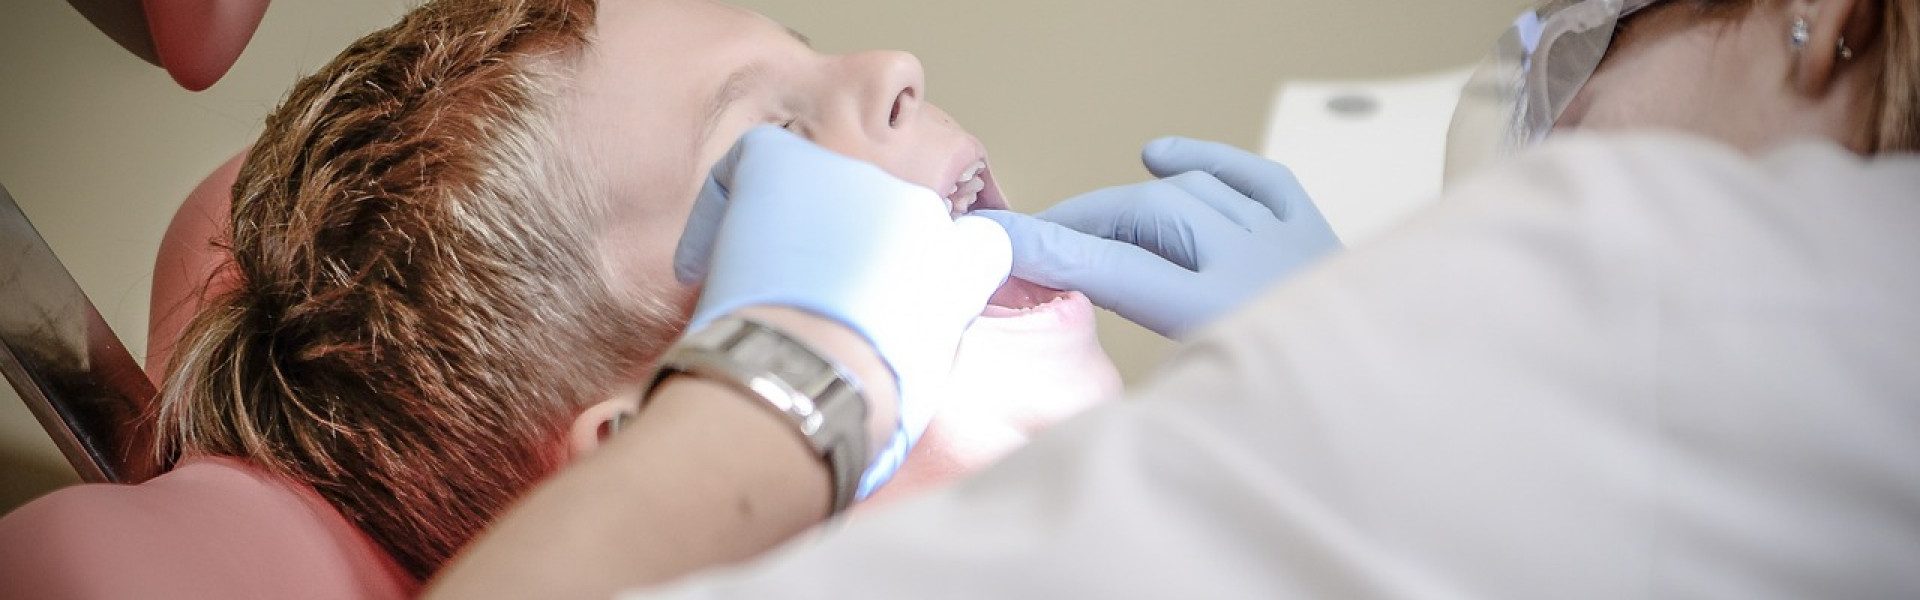 Urgence dentaire : que faire ?